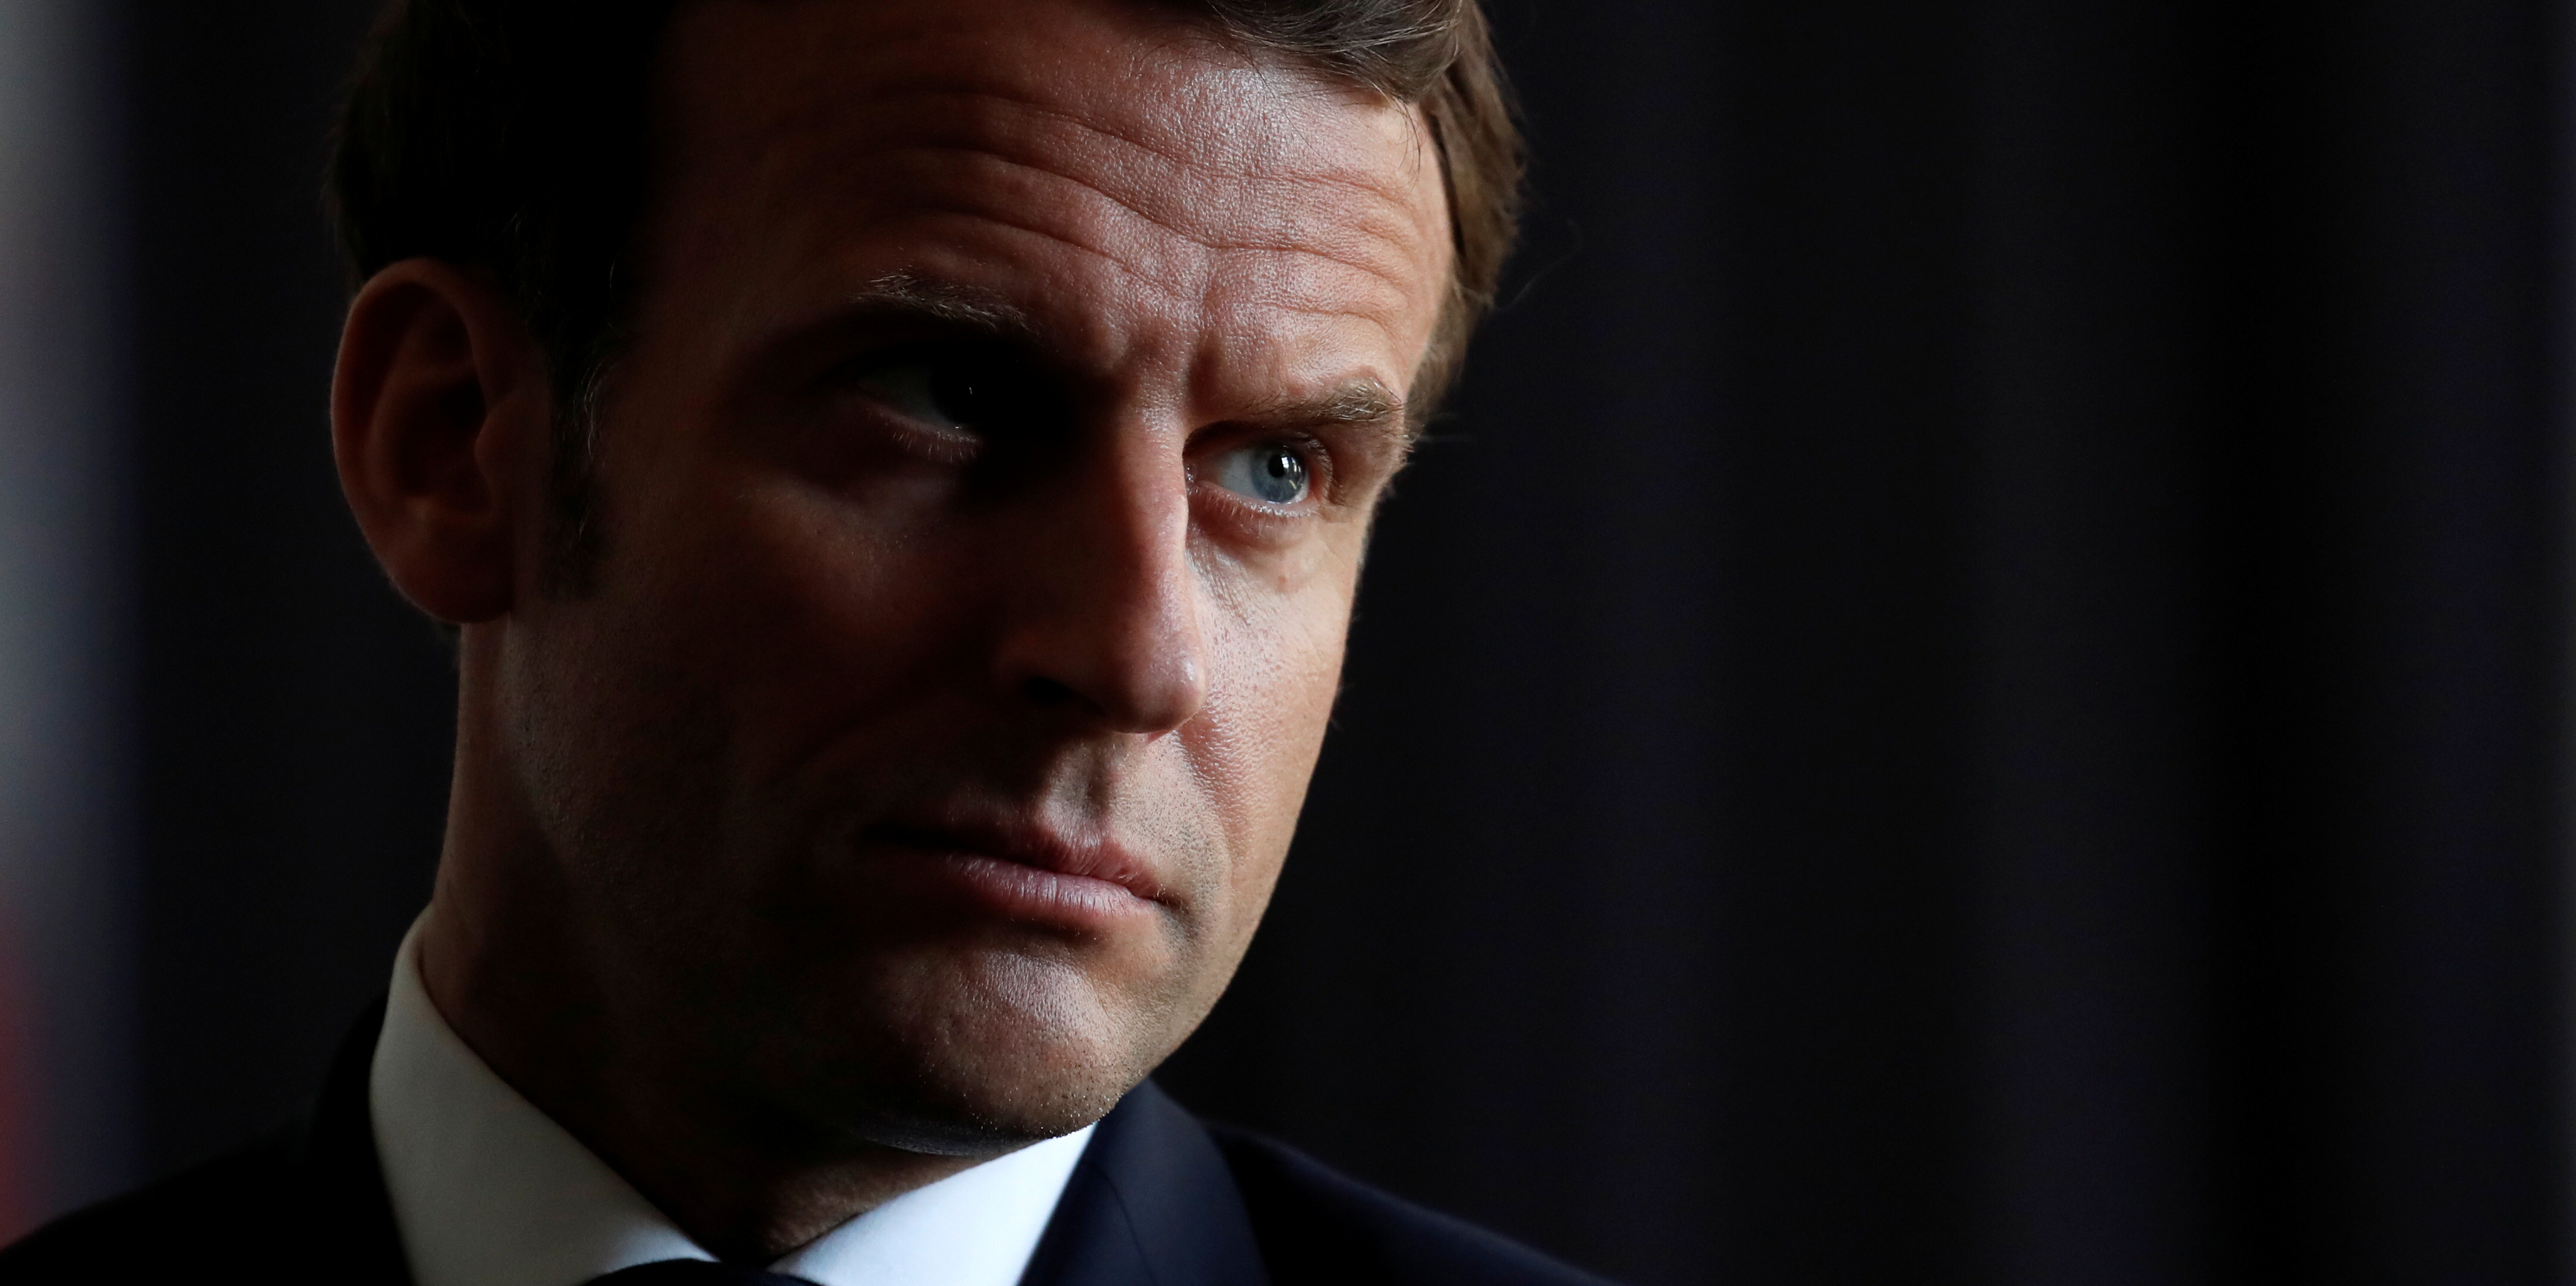 Retraites: Macron veut relancer sa réforme coûte que coûte, les syndicats mettent en garde